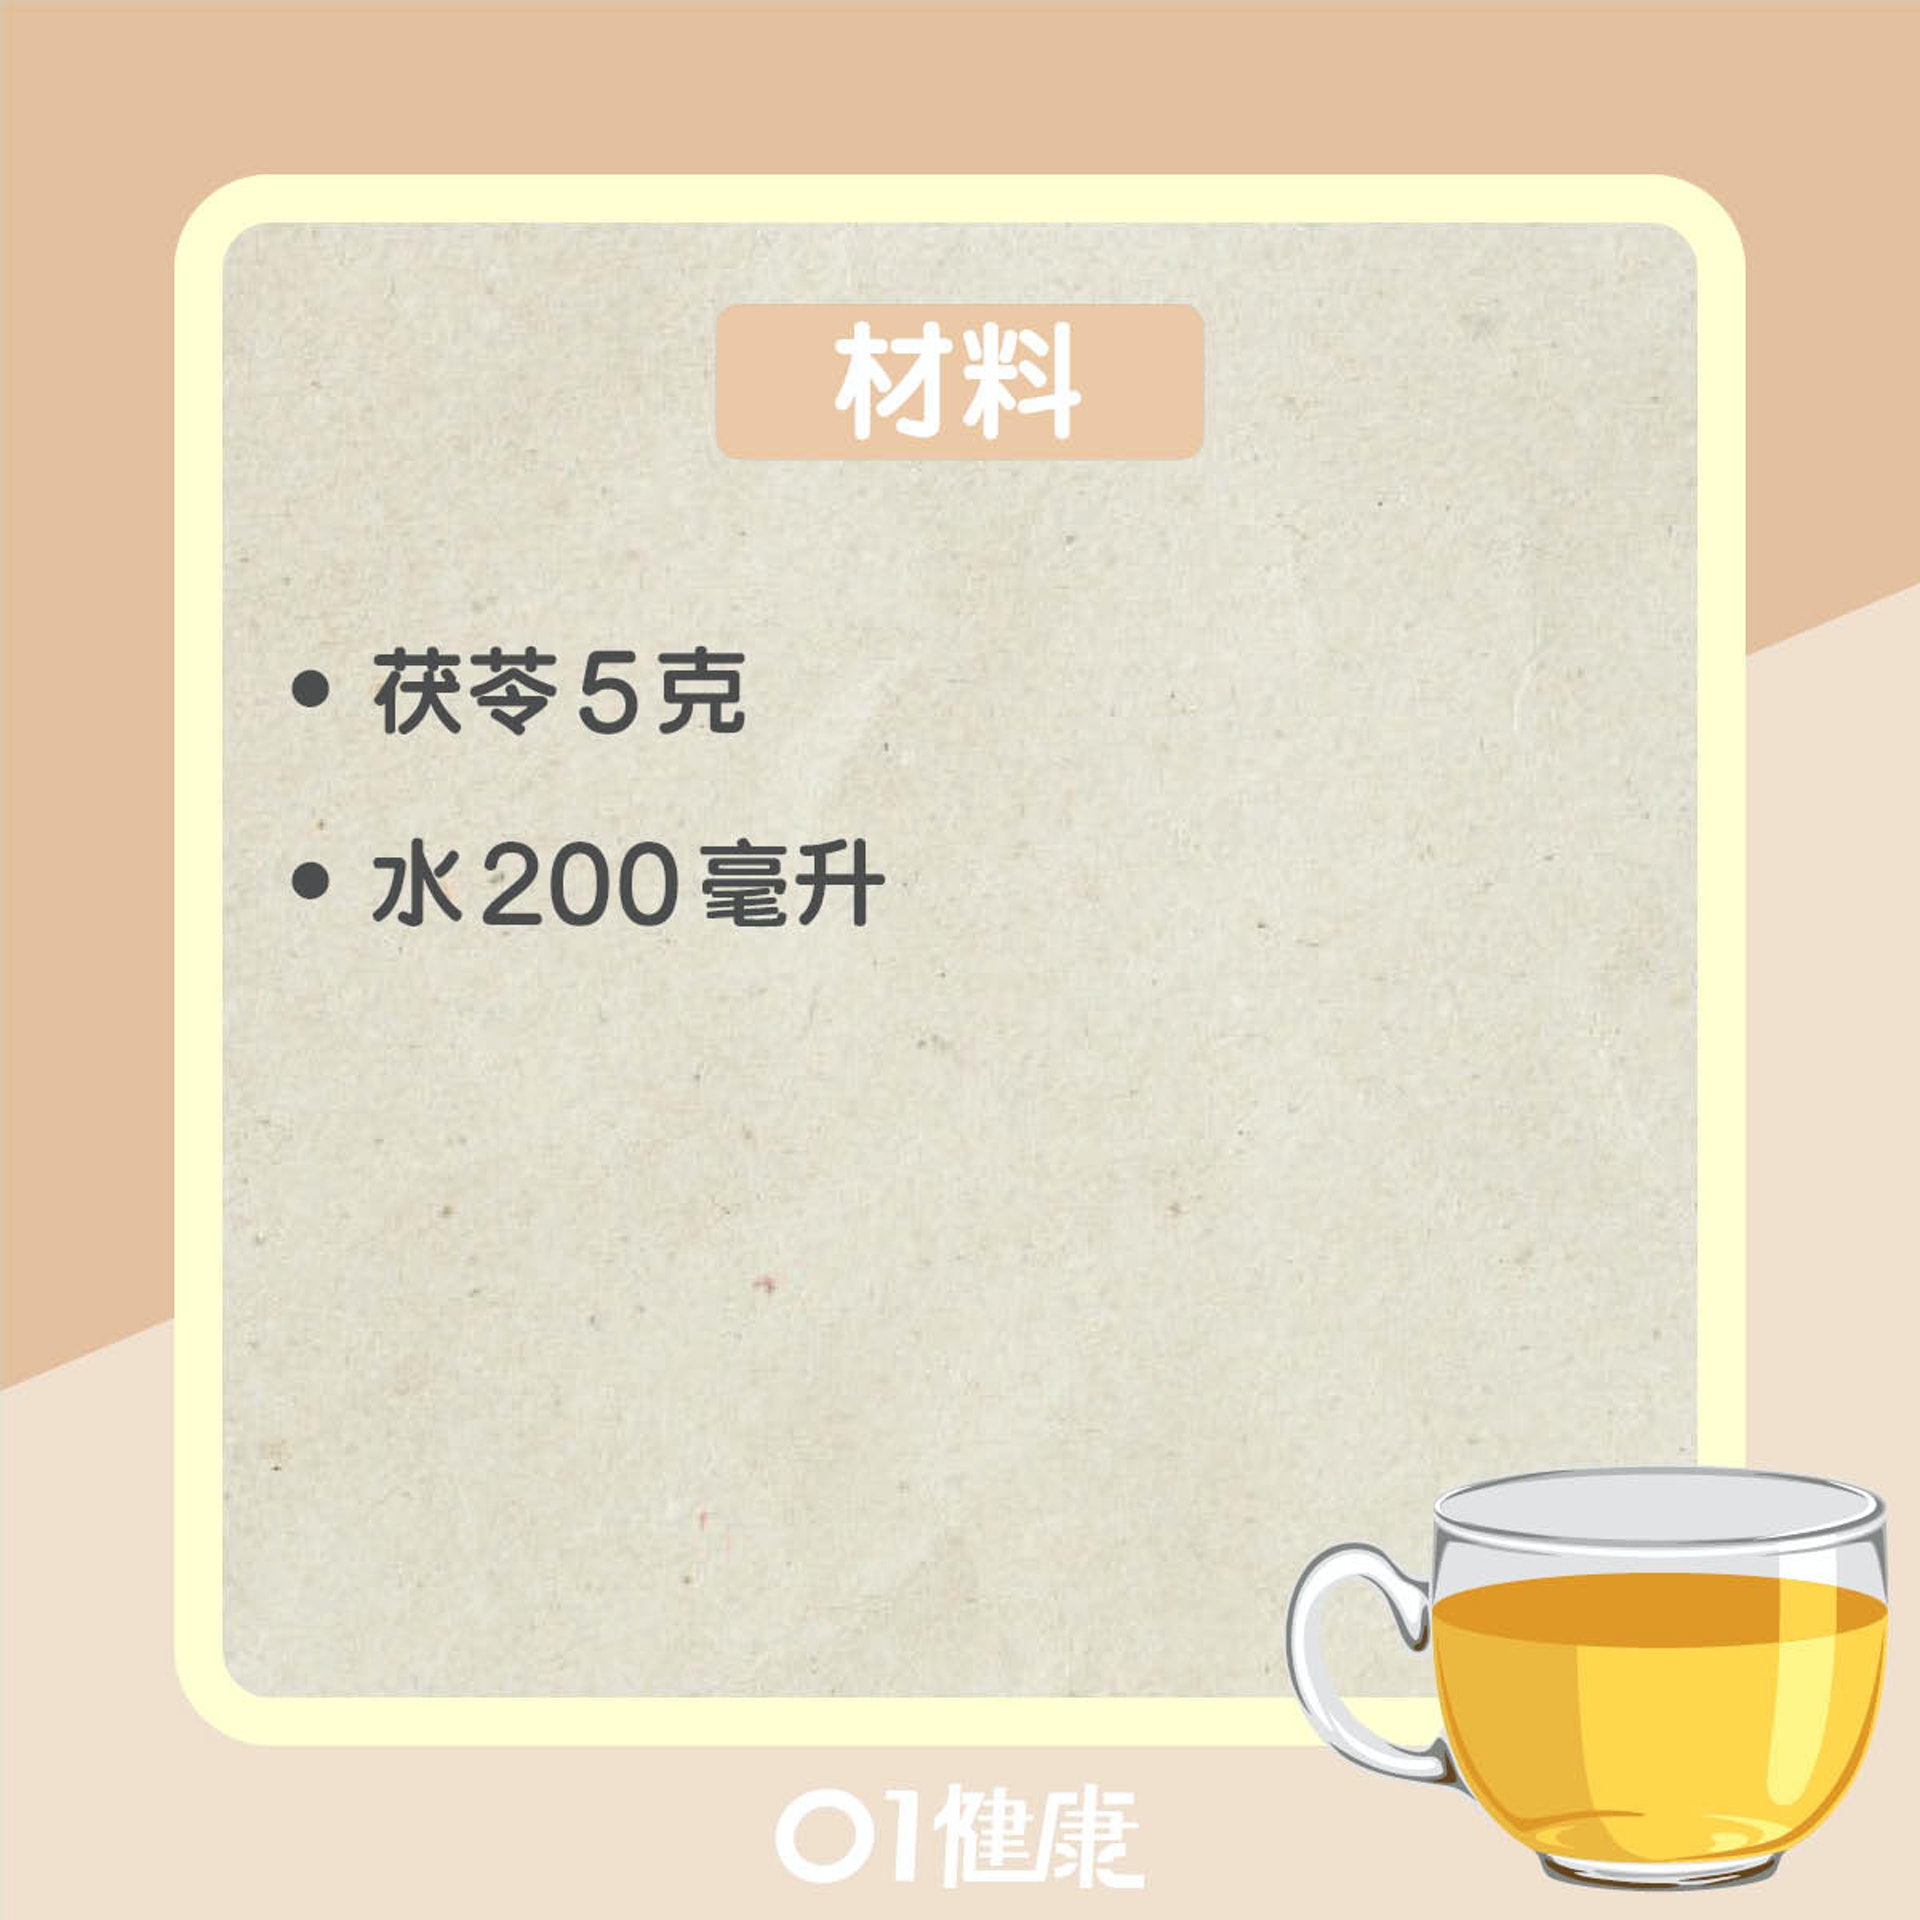 茯苓茶療（01製圖）